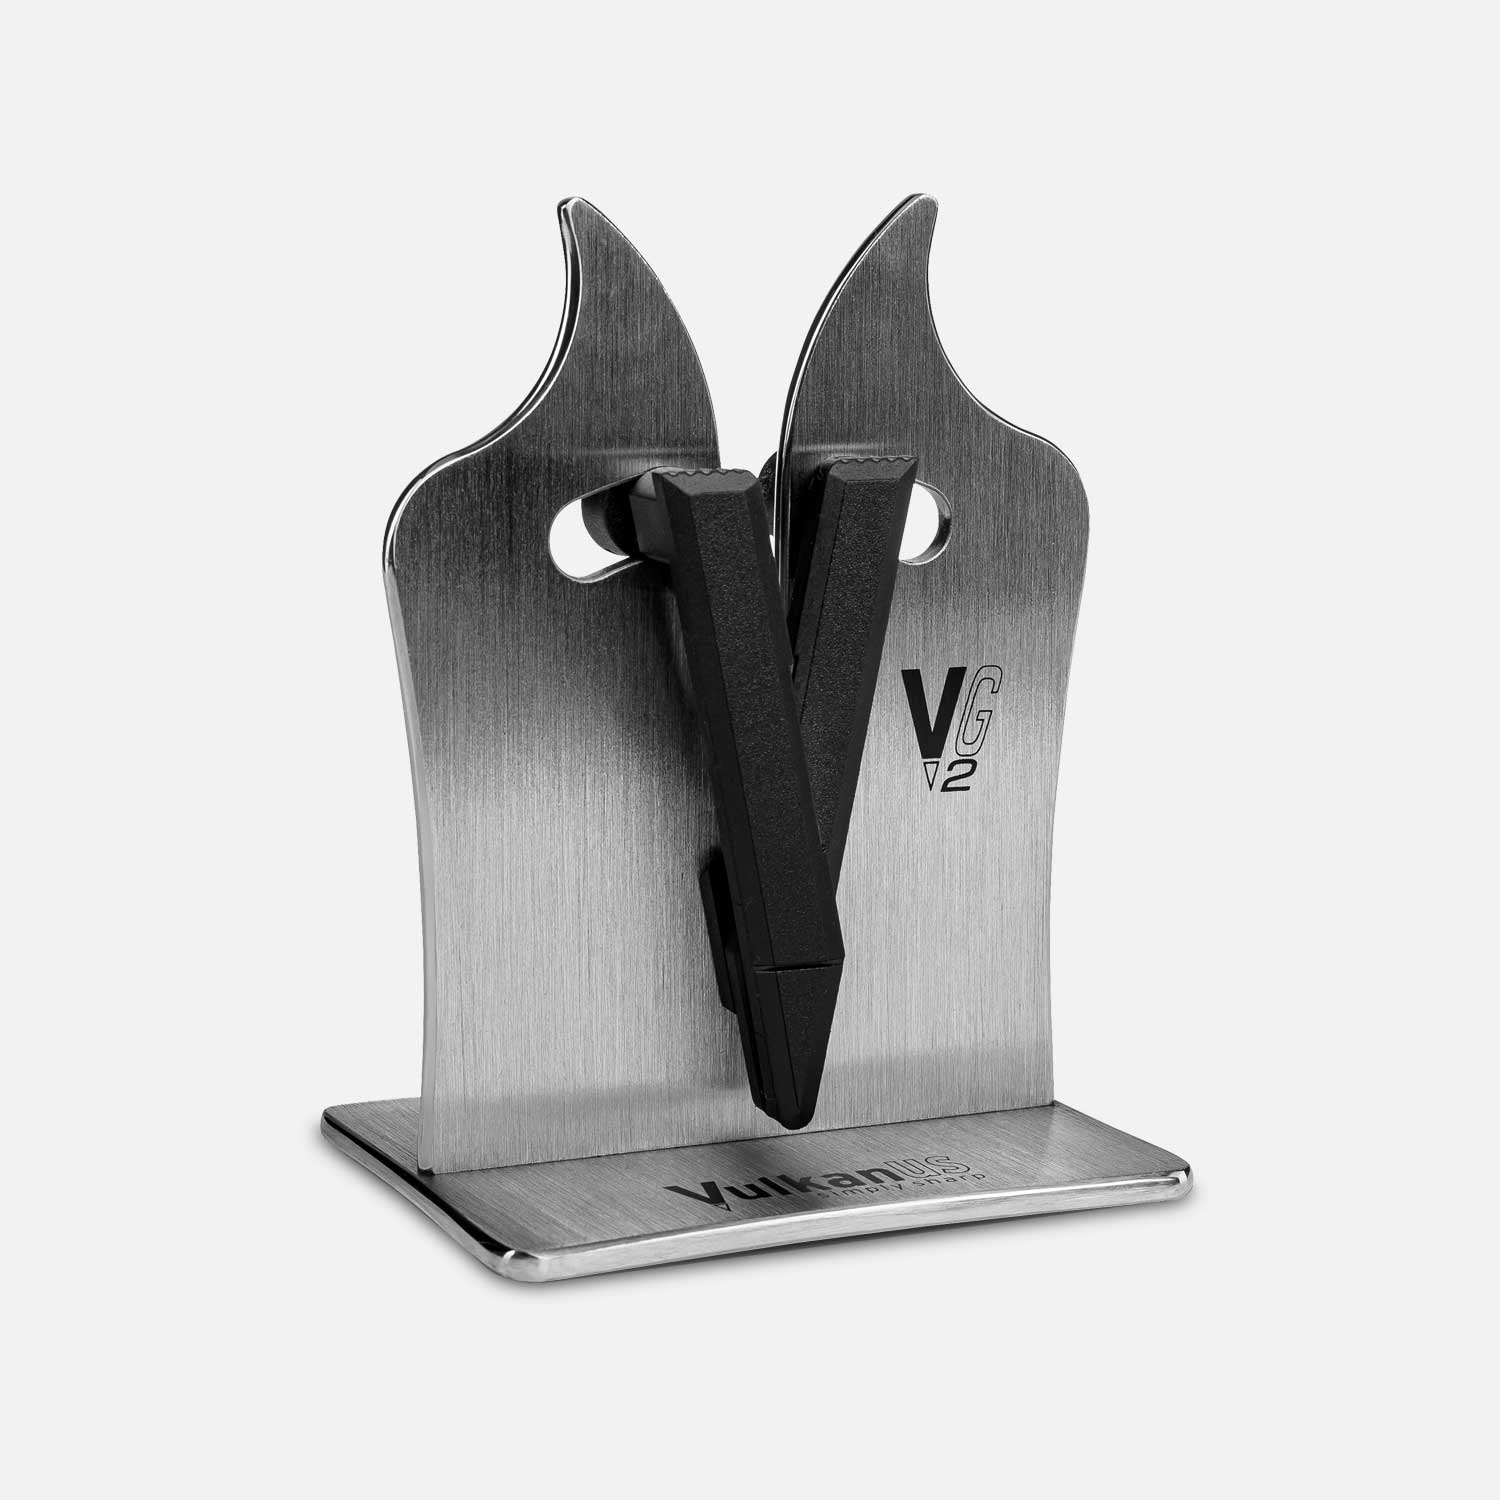 Vulkanus knife sharpener made of stainless steel